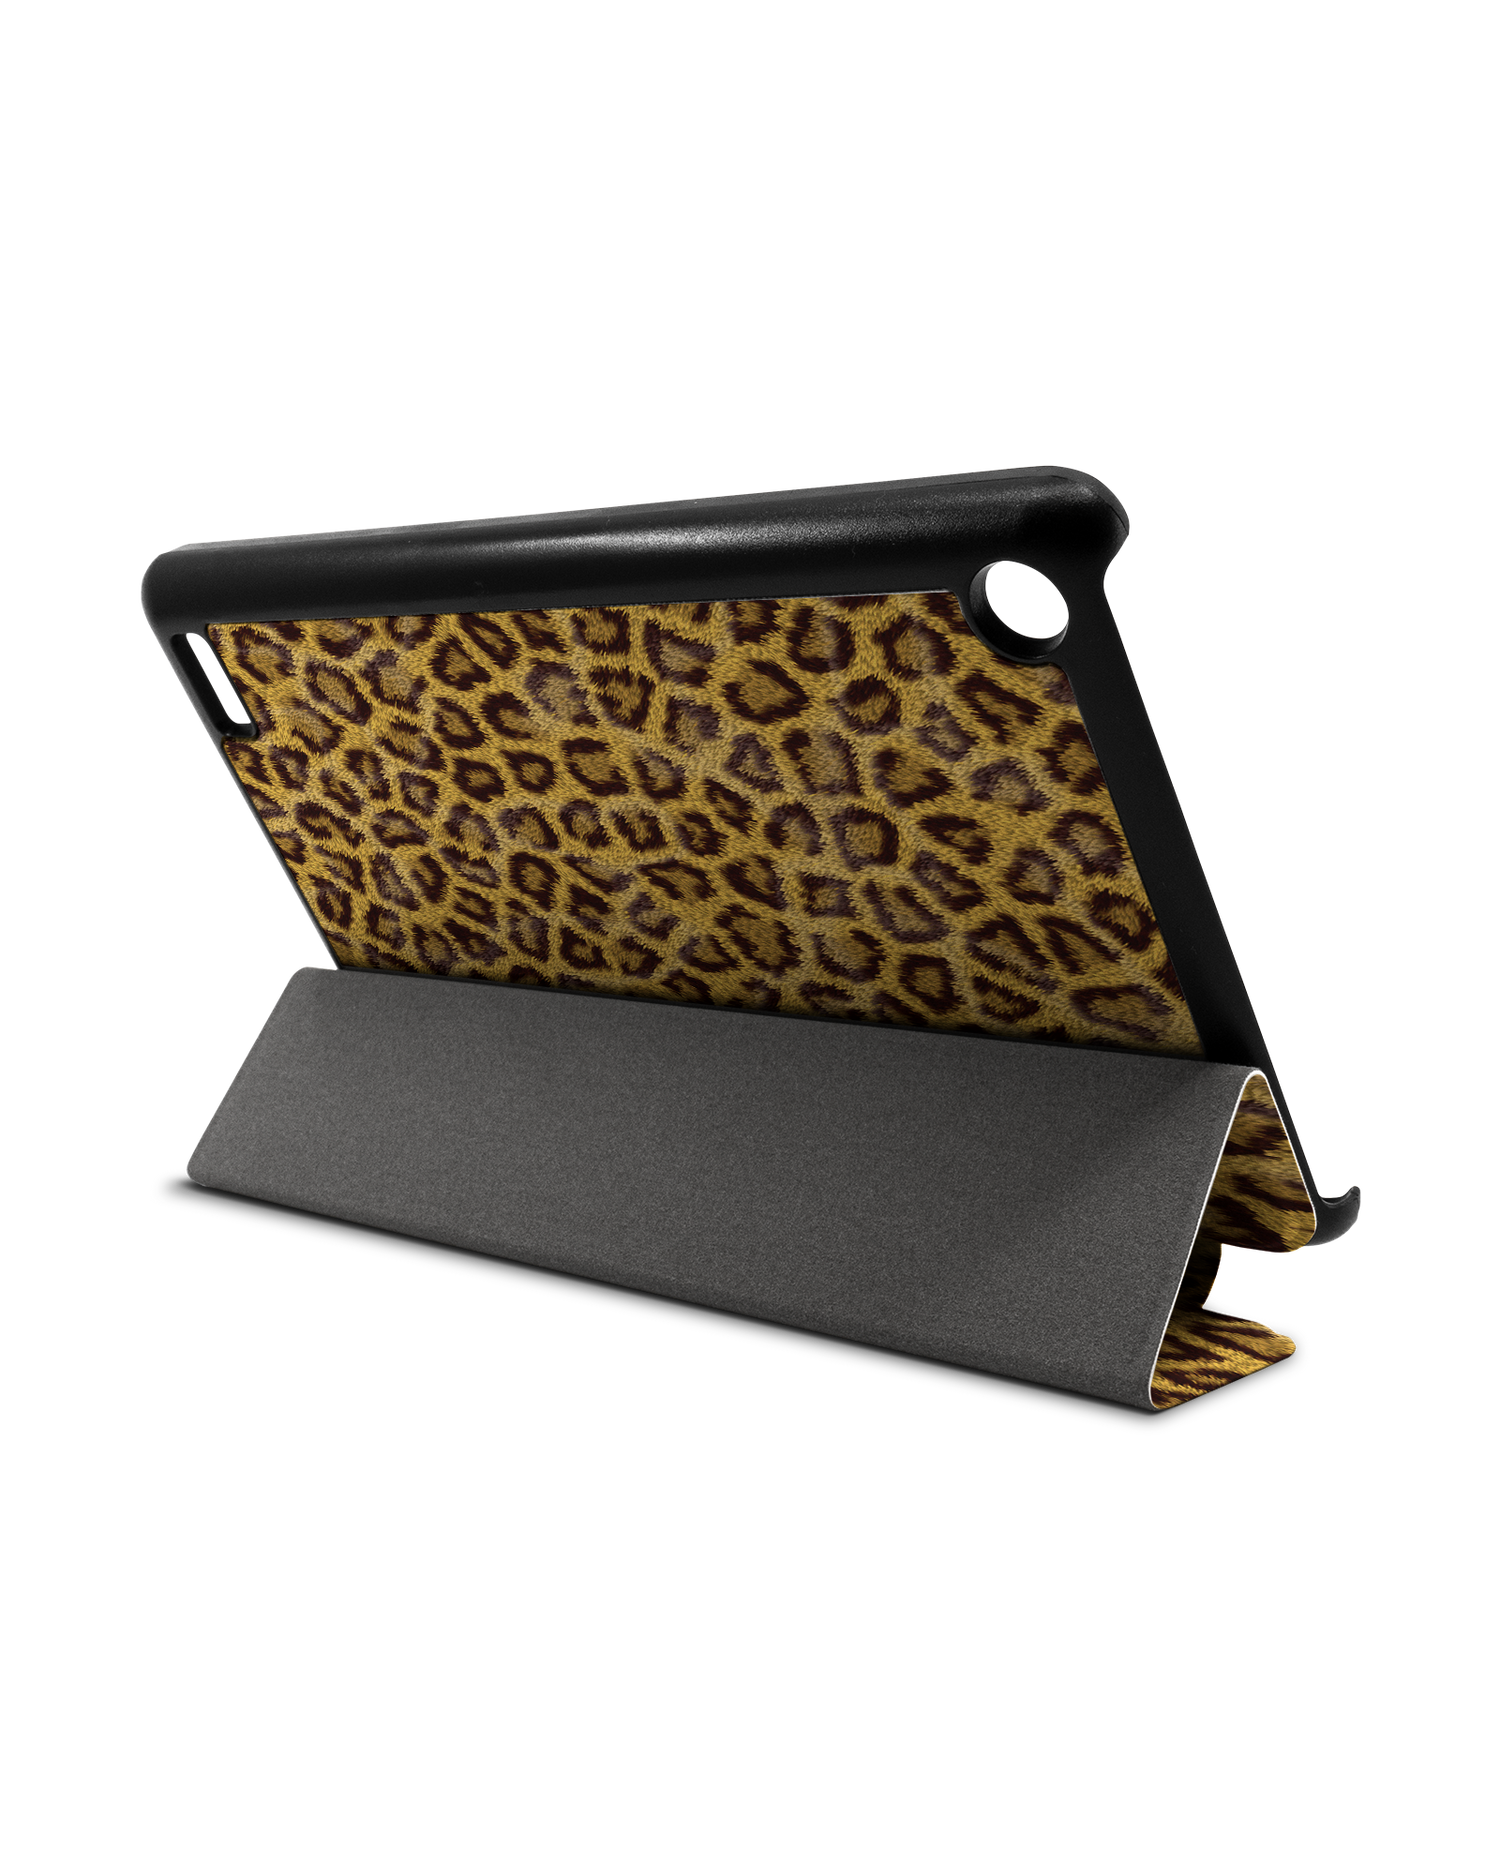 Leopard Skin Tablet Smart Case für Amazon Fire 7: Aufgestellt im Querformat